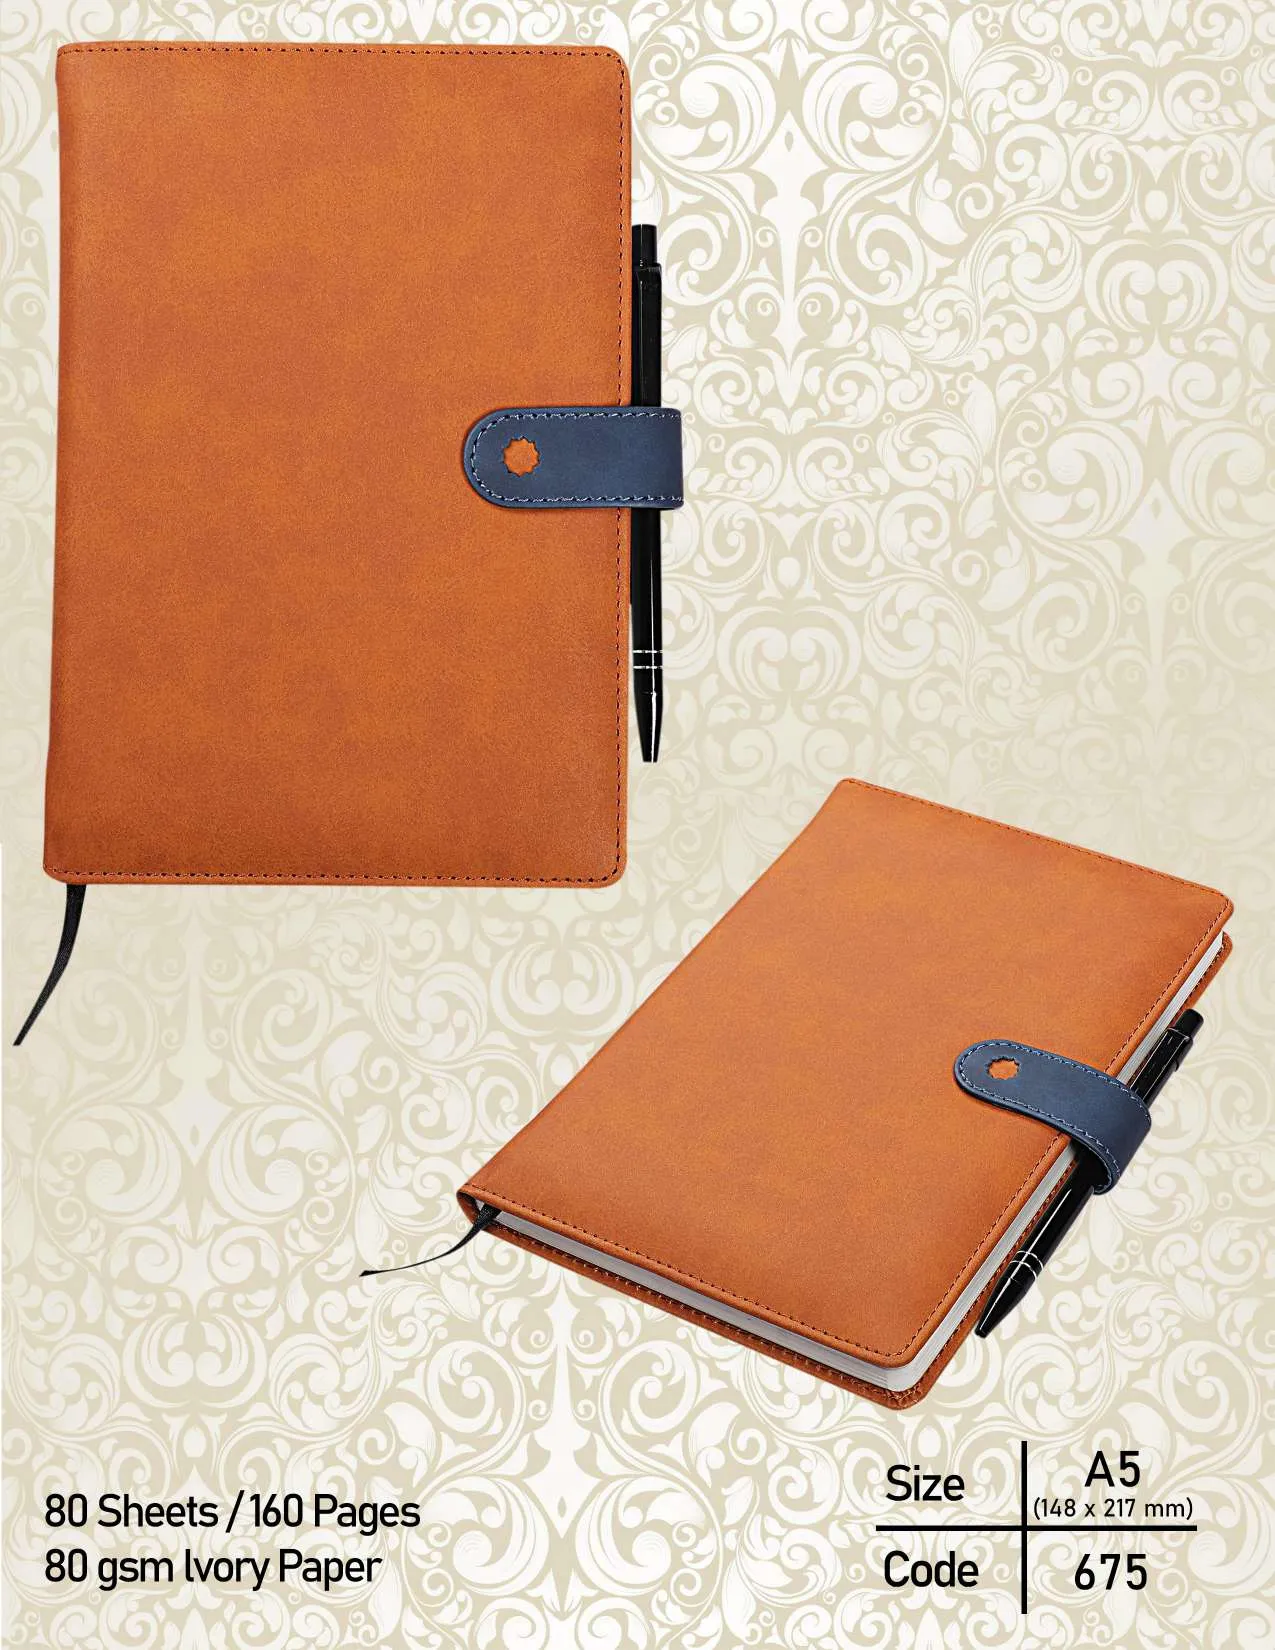 Commercio all'ingrosso promozionale in pelle copertina blocco Note personalizzato libro taccuino in pelle per gli insegnanti di ufficio Gifting dipendenti